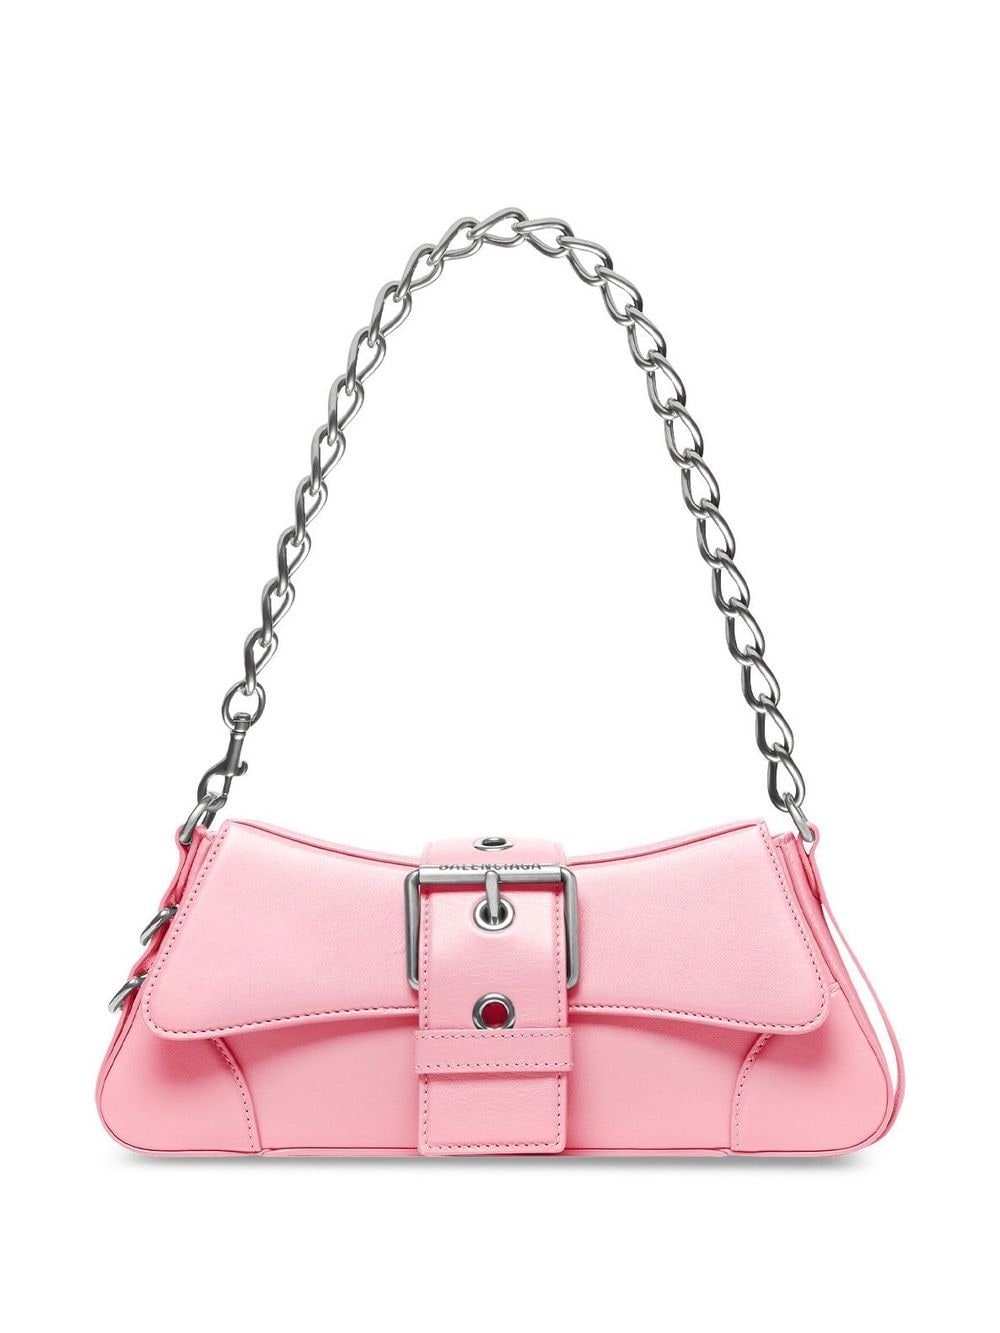 Balenciaga Lindsay leather shoulder bag - Pink